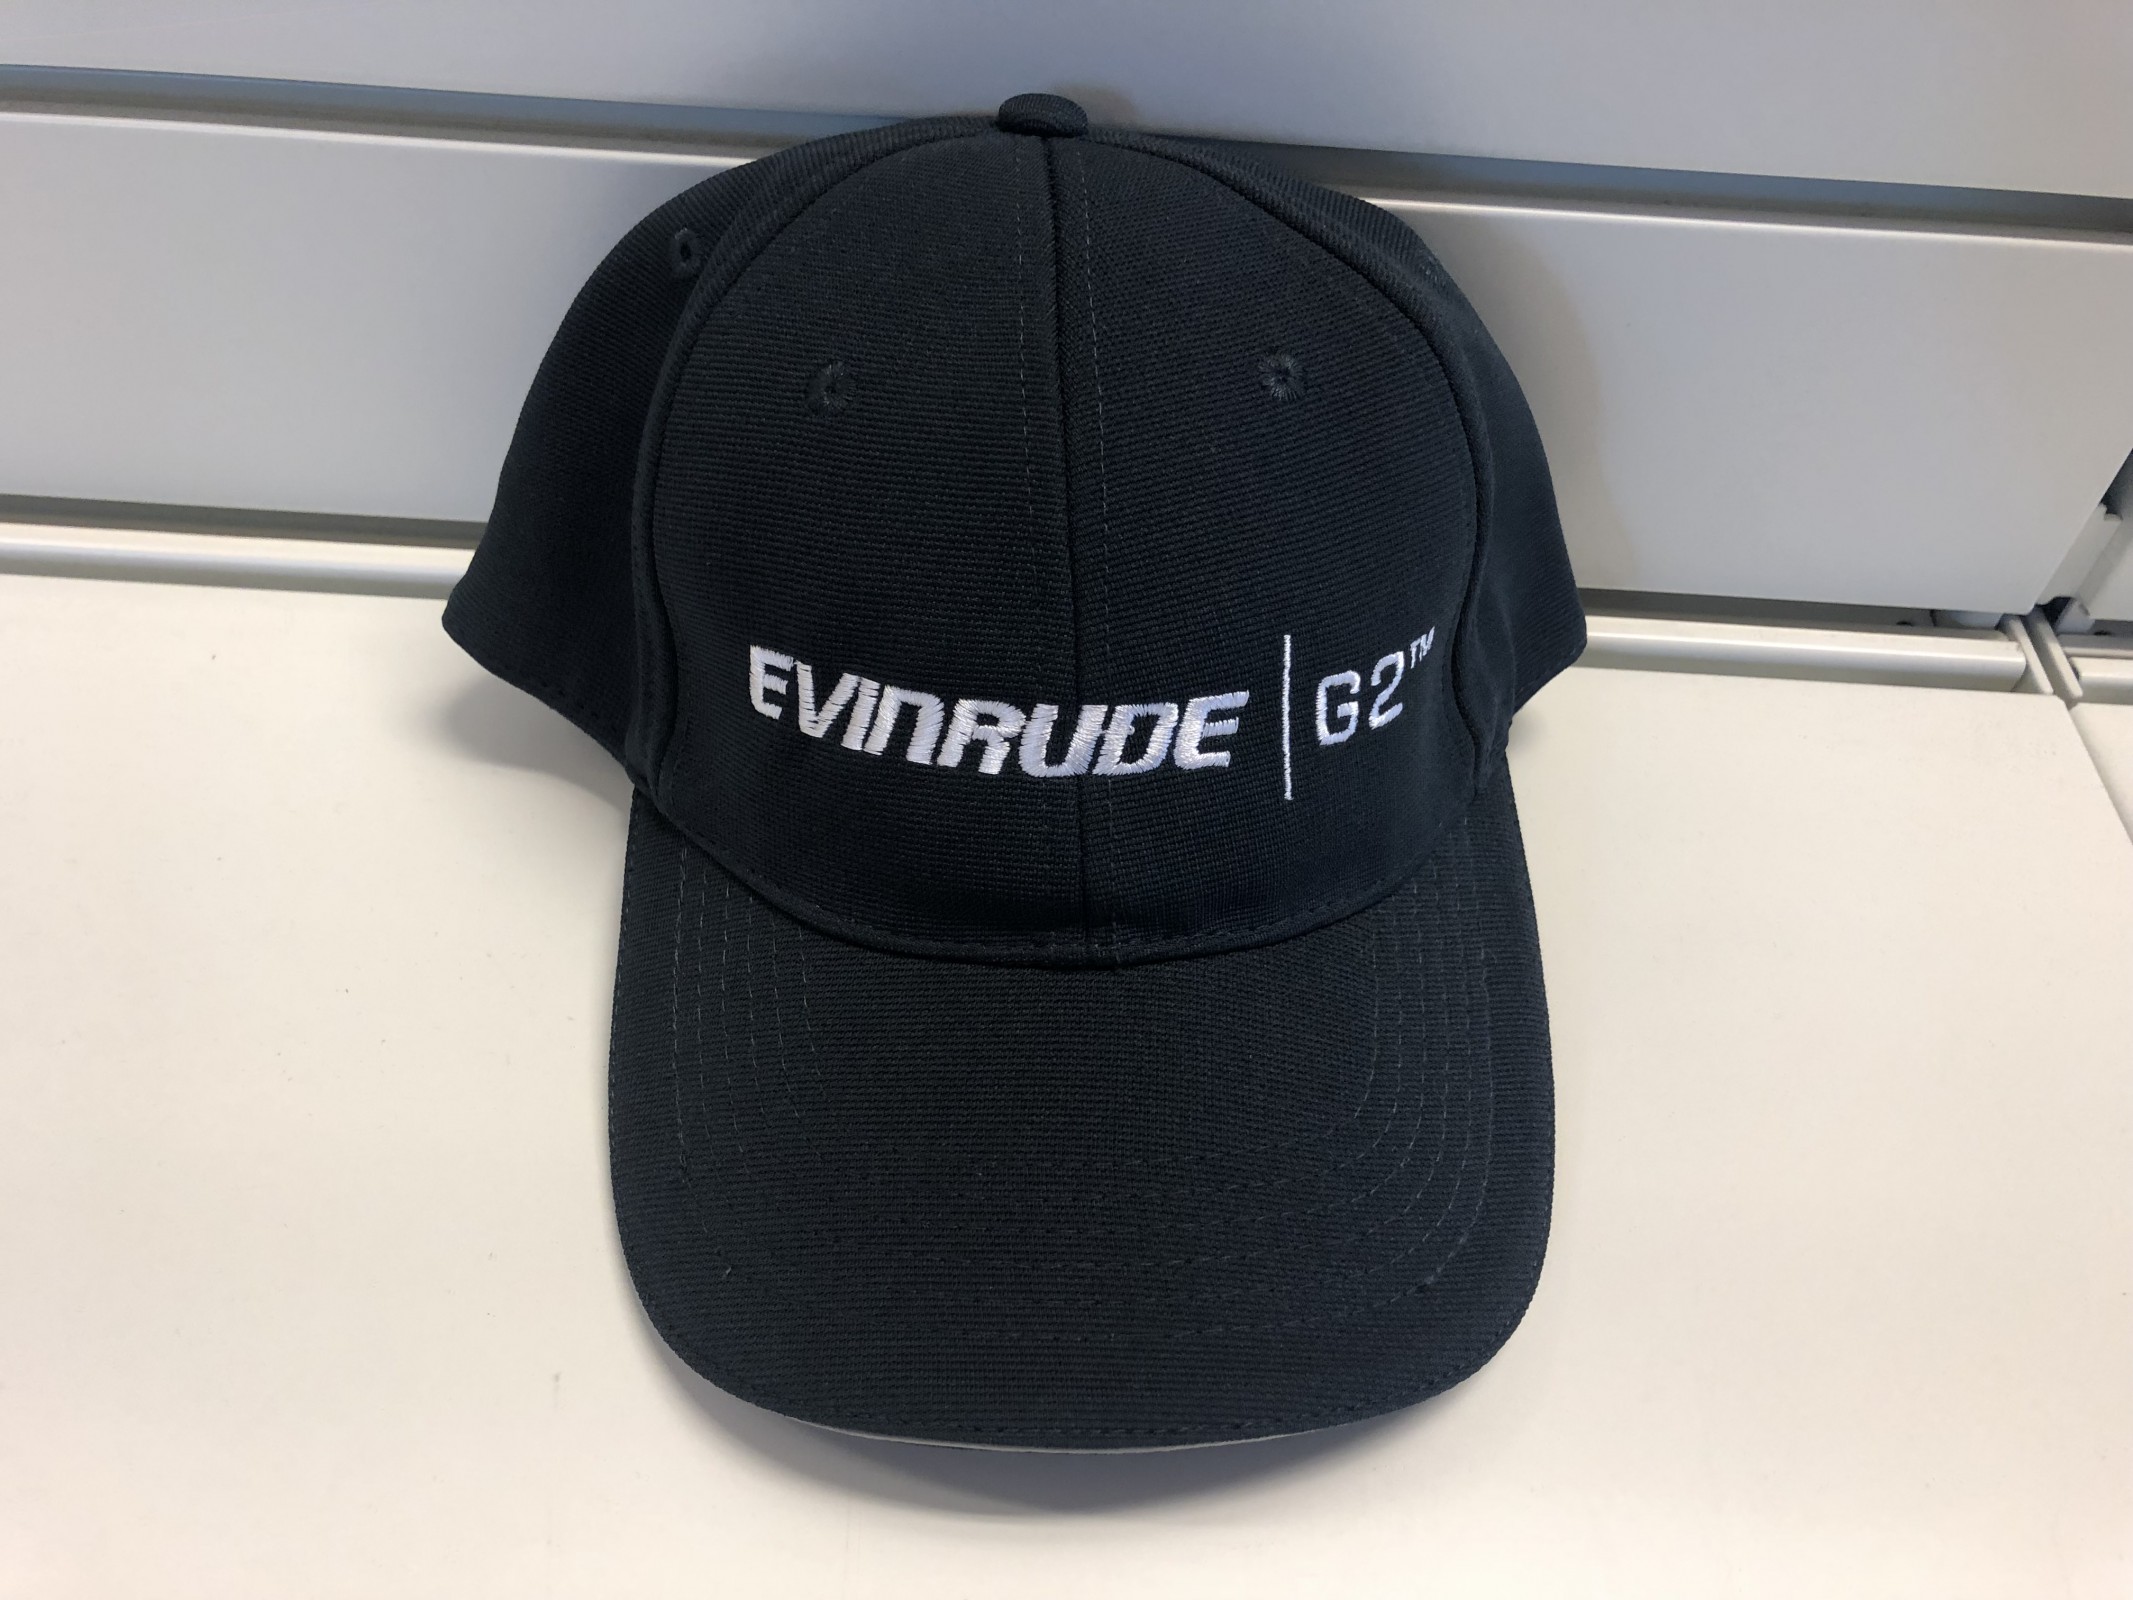 Evinrude G2 caps